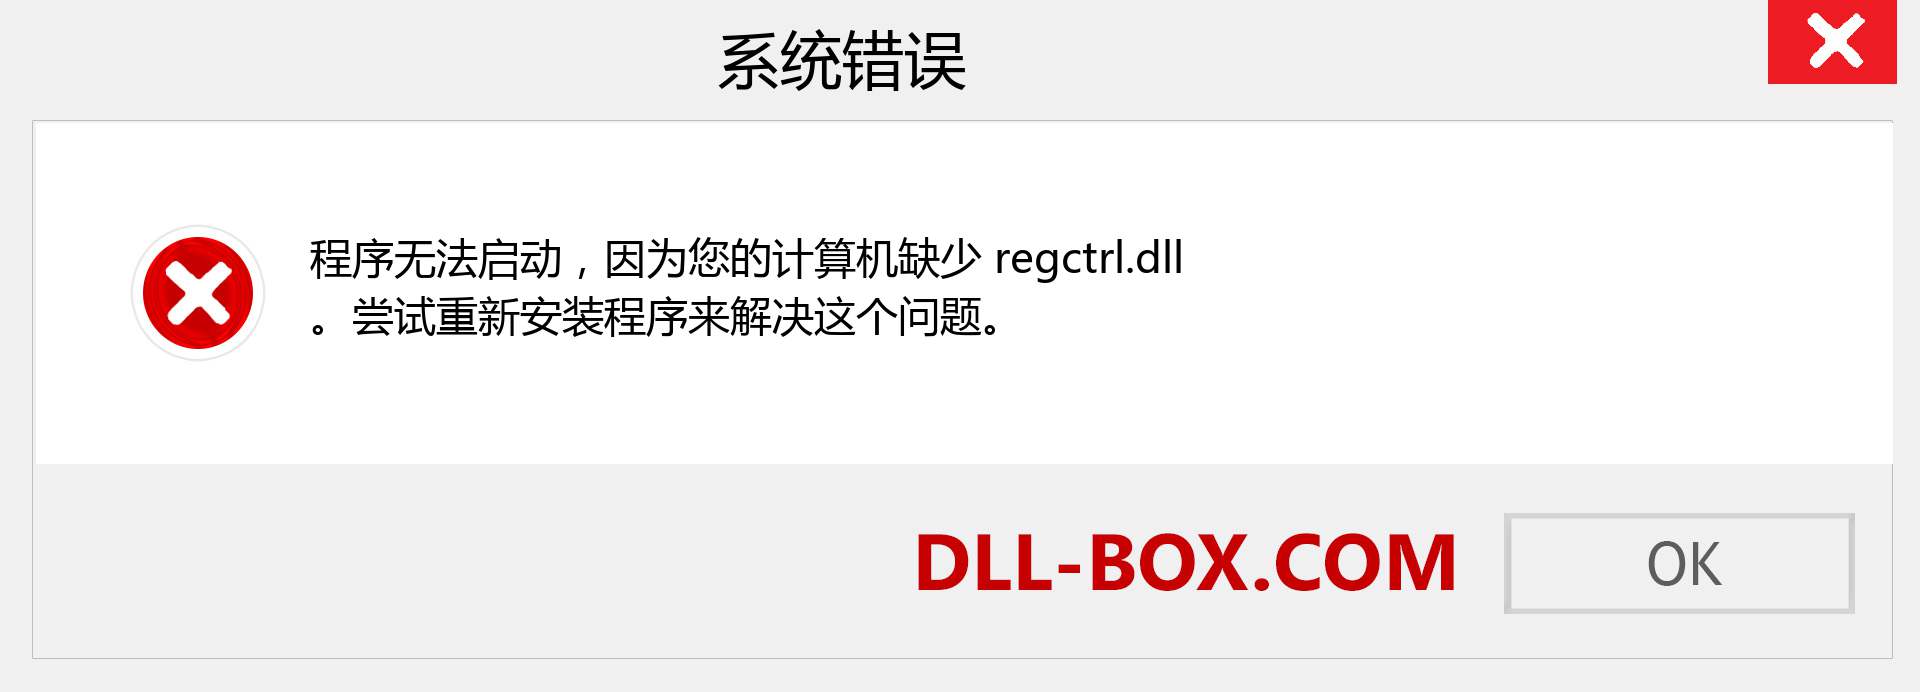 regctrl.dll 文件丢失？。 适用于 Windows 7、8、10 的下载 - 修复 Windows、照片、图像上的 regctrl dll 丢失错误